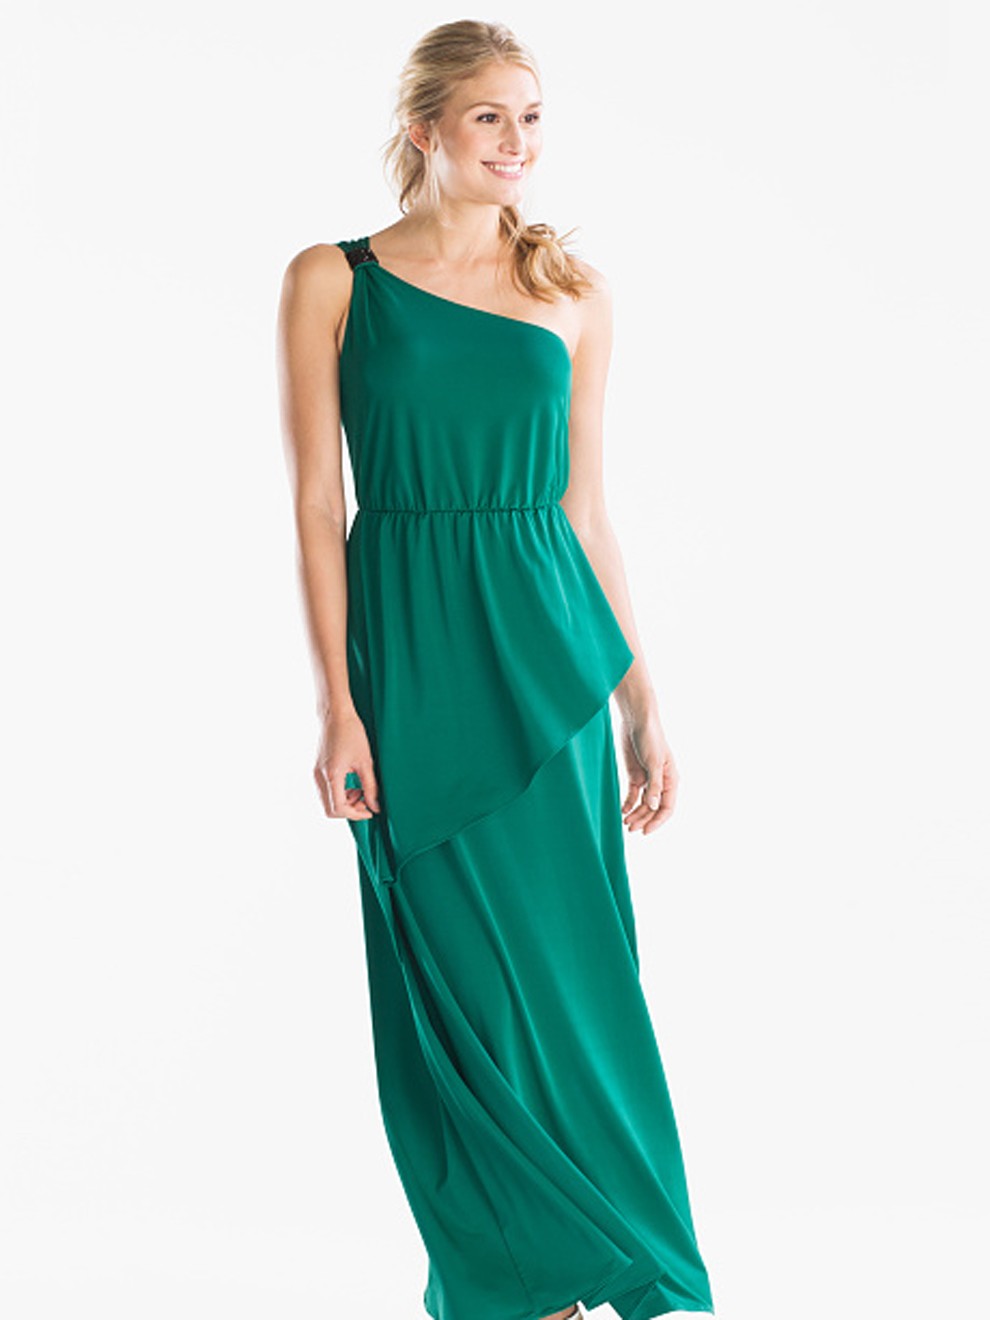 Vestido asimétrico verde esmeralda de C&A por 79’90 euros